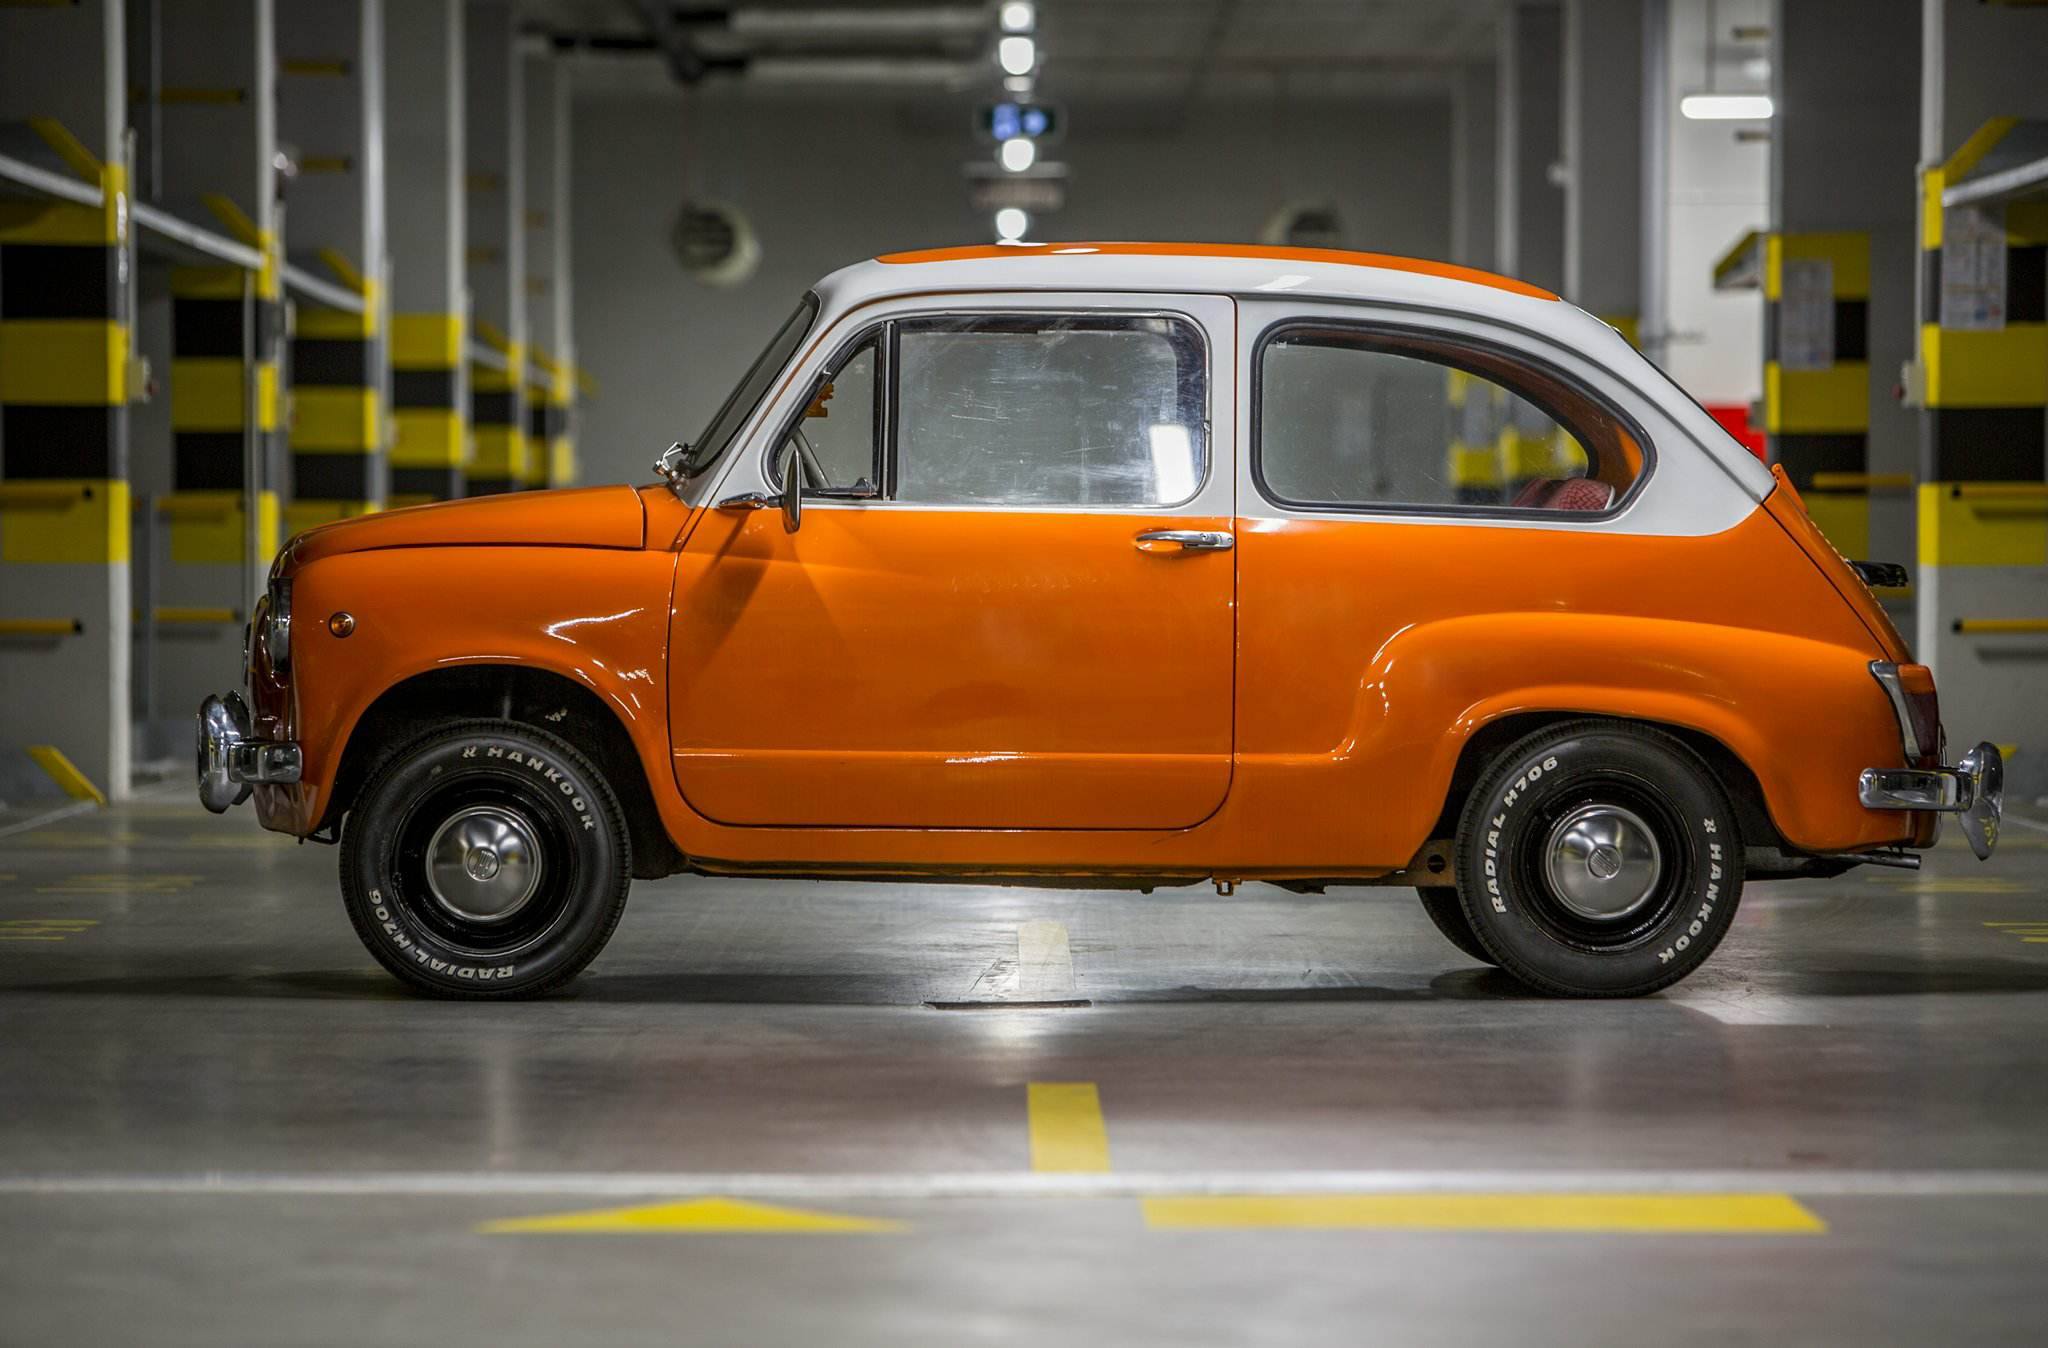 Fiat 600 1965 51899 PLN Warszawa Giełda klasyków